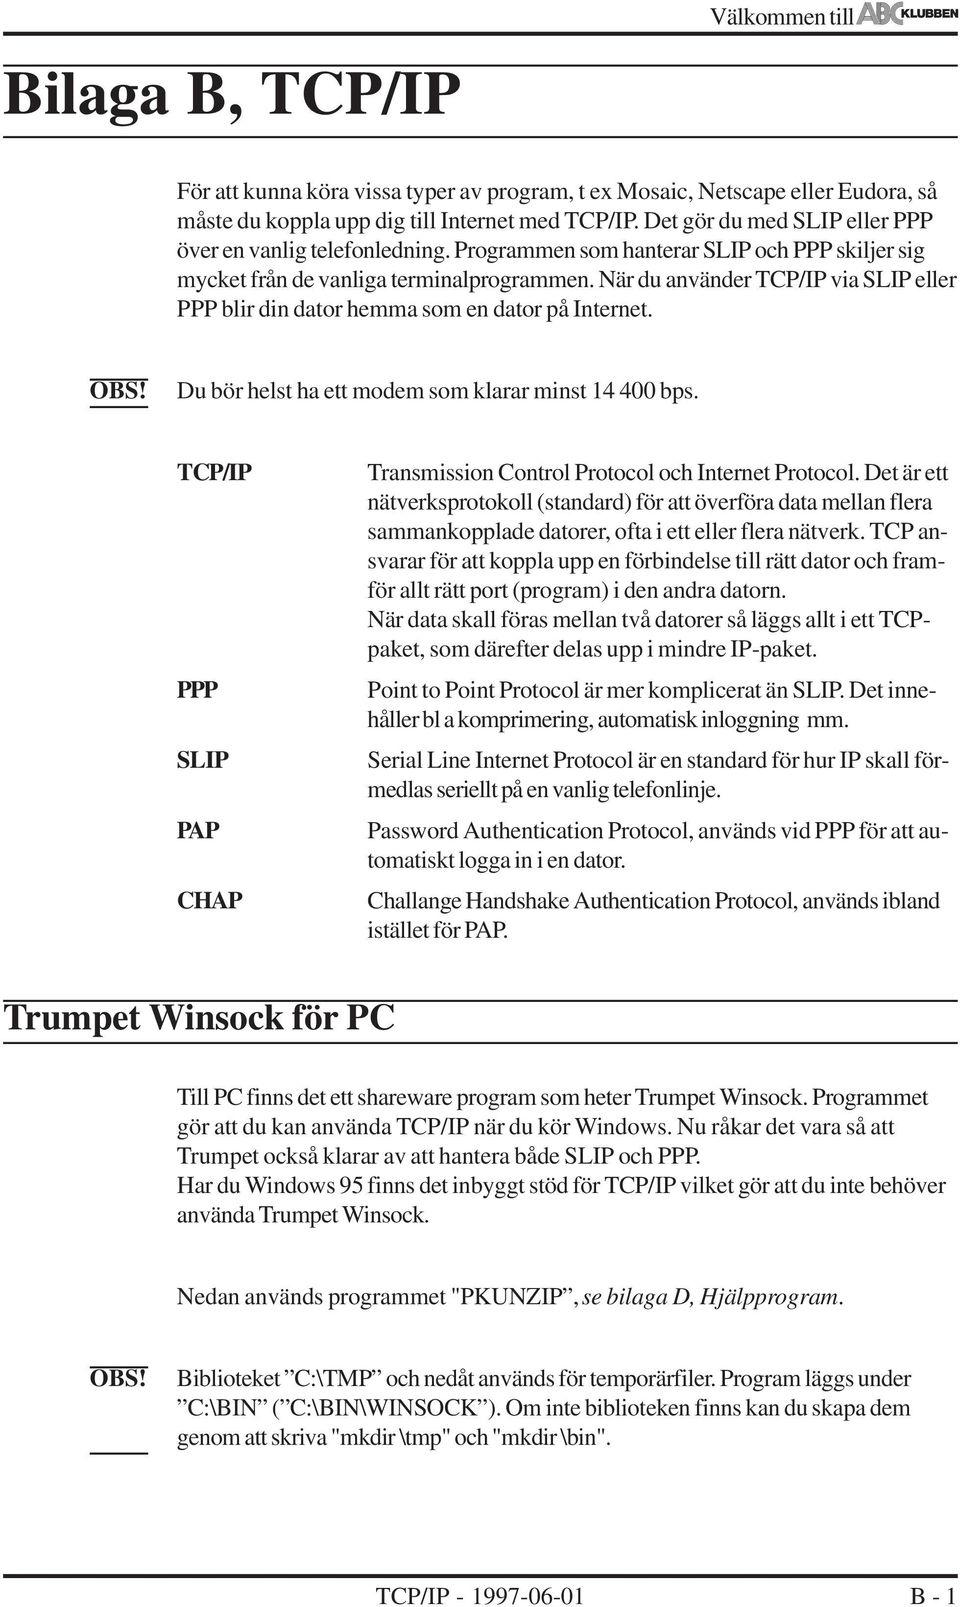 När du använder TCP/IP via SLIP eller PPP blir din dator hemma som en dator på Internet. Du bör helst ha ett modem som klarar minst 14 400 bps.